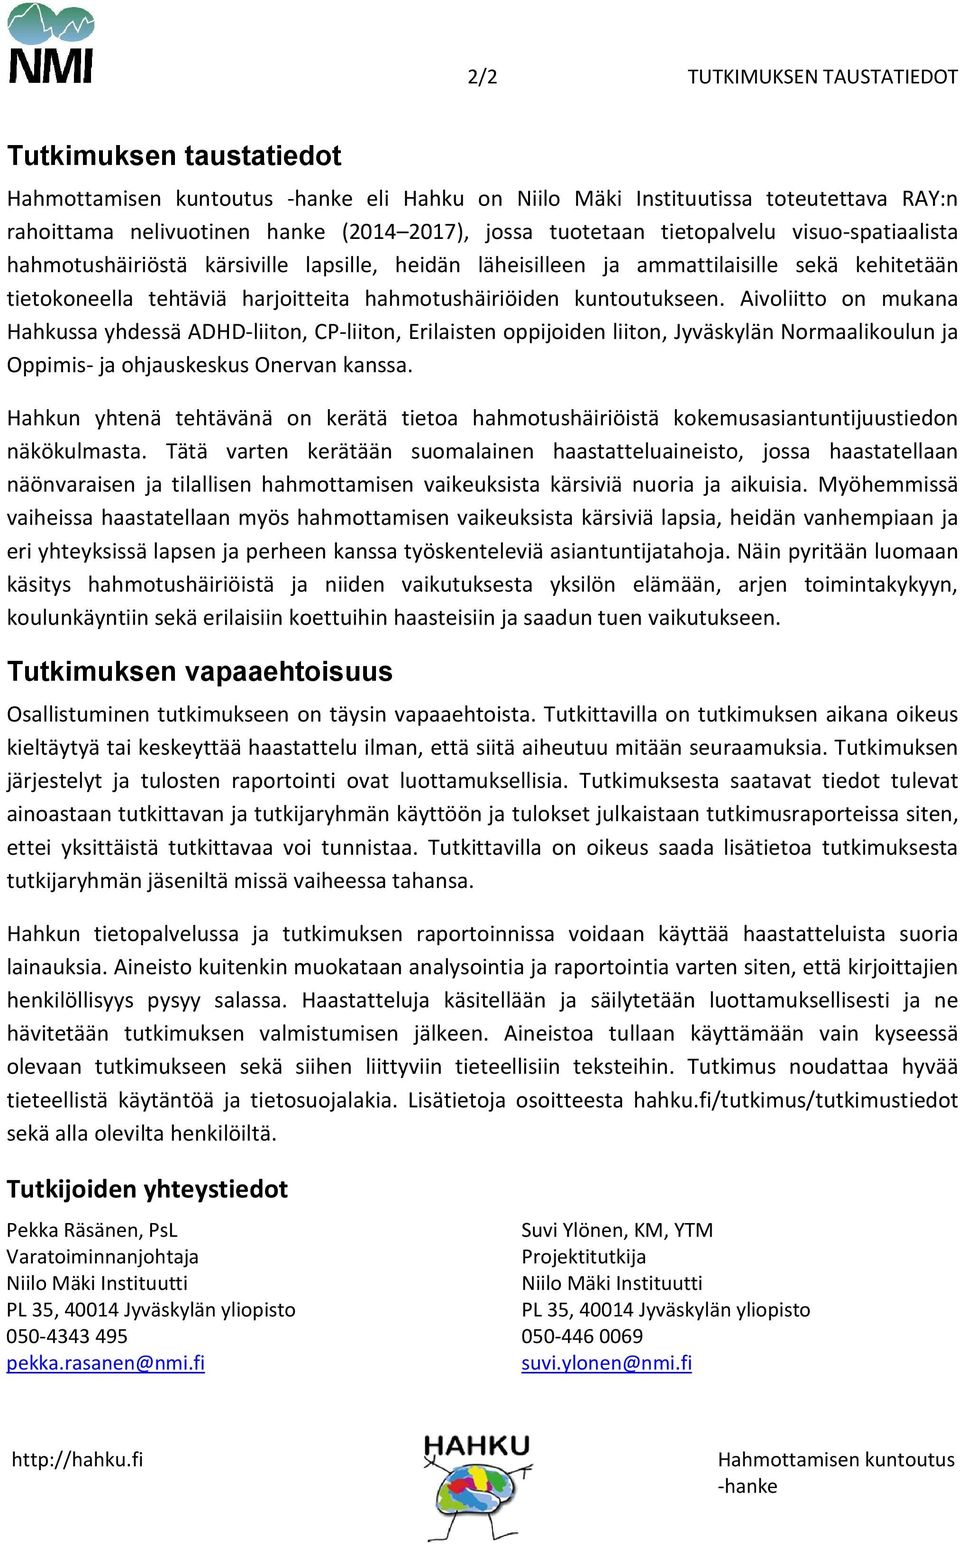 kuntoutukseen. Aivoliitto on mukana Hahkussa yhdessä ADHD-liiton, CP-liiton, Erilaisten oppijoiden liiton, Jyväskylän Normaalikoulun ja Oppimis- ja ohjauskeskus Onervan kanssa.